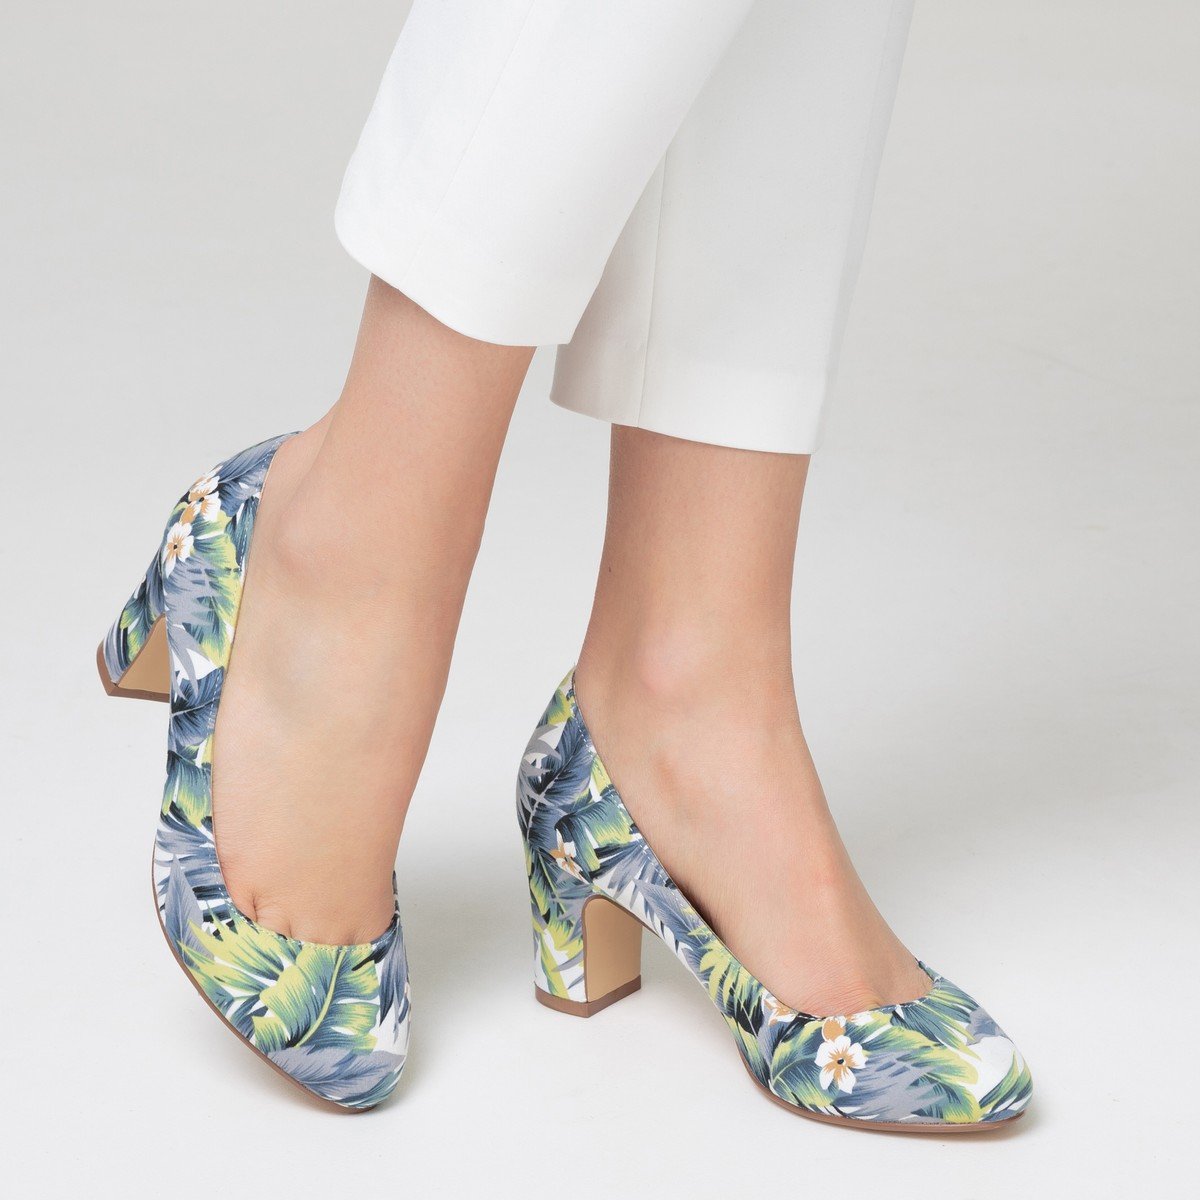 Туфли с цветочным принтом